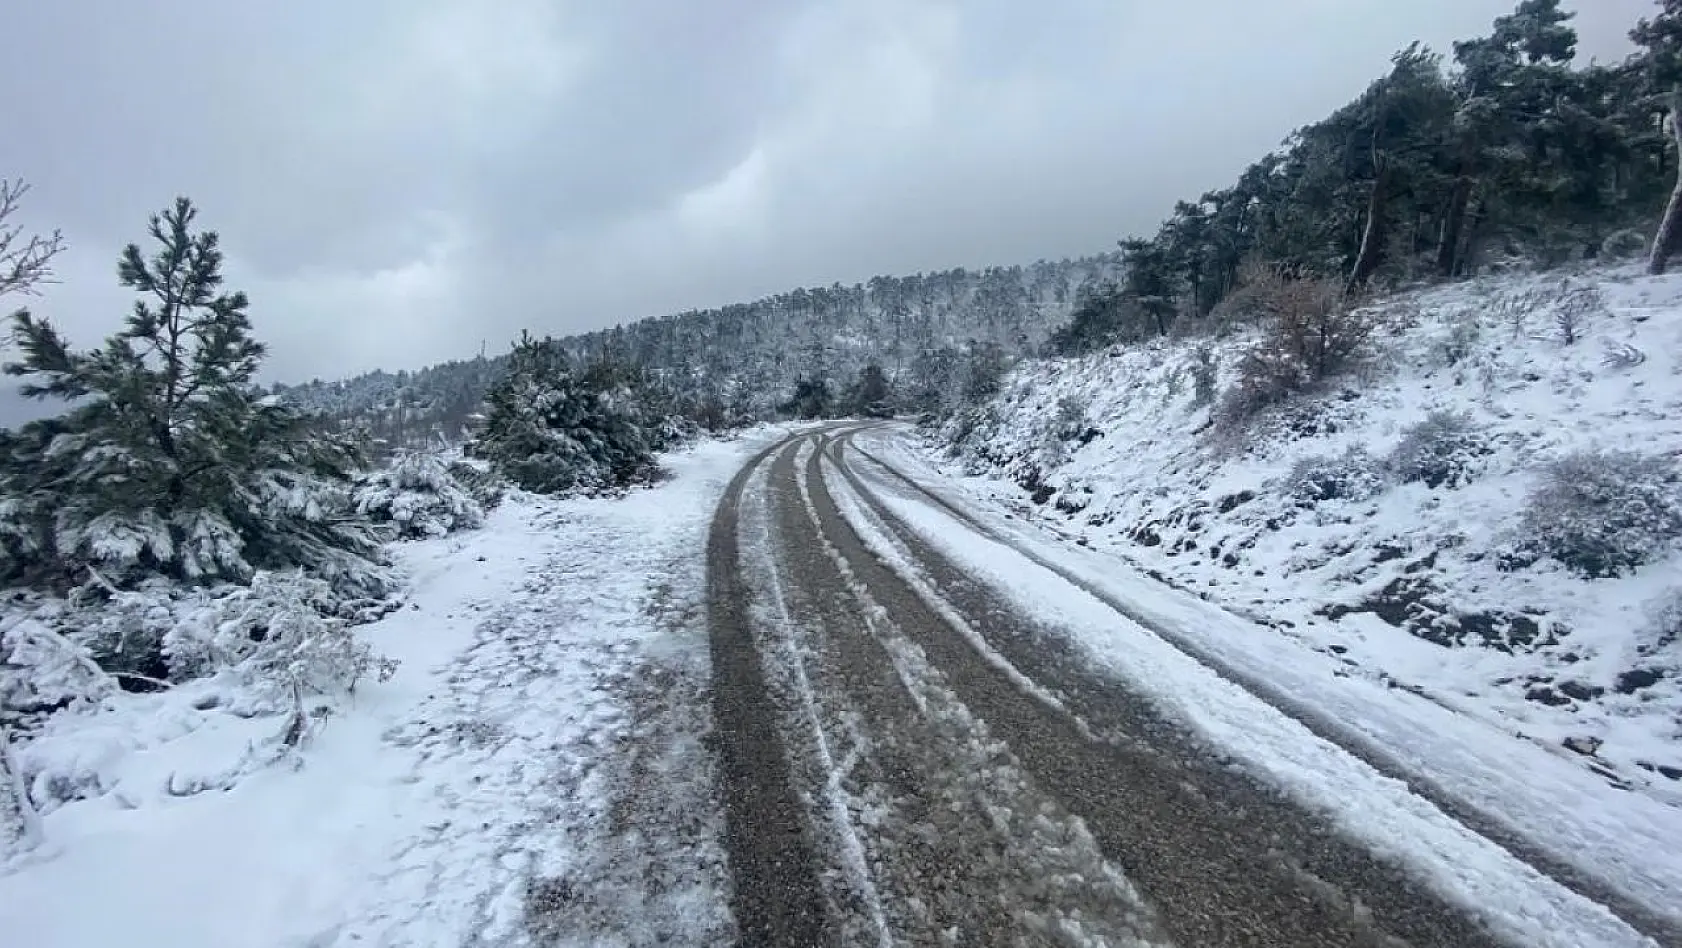 Turgutlu'da kar yağışı nedeniyle iki okulda taşımalı eğitime ara verildi